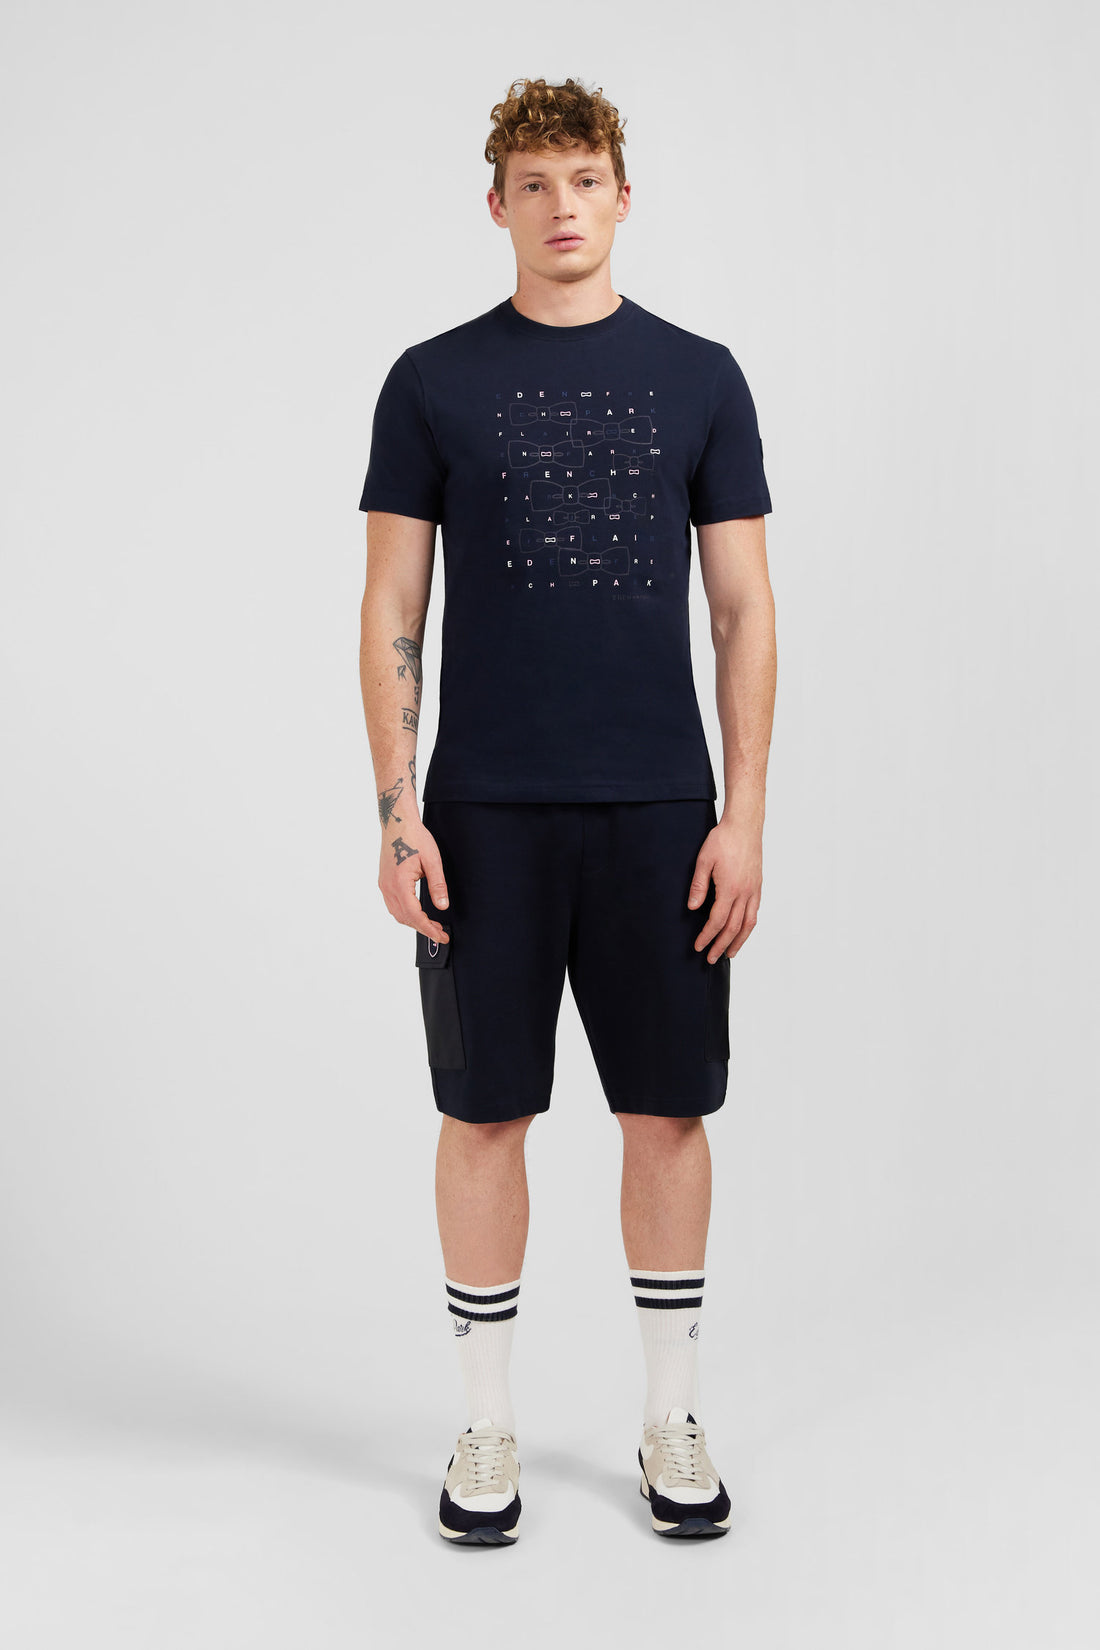 Navy Blue Eden Park Printed Short-Sleeved T-Shirt_E24MAITC0040_BLF_01